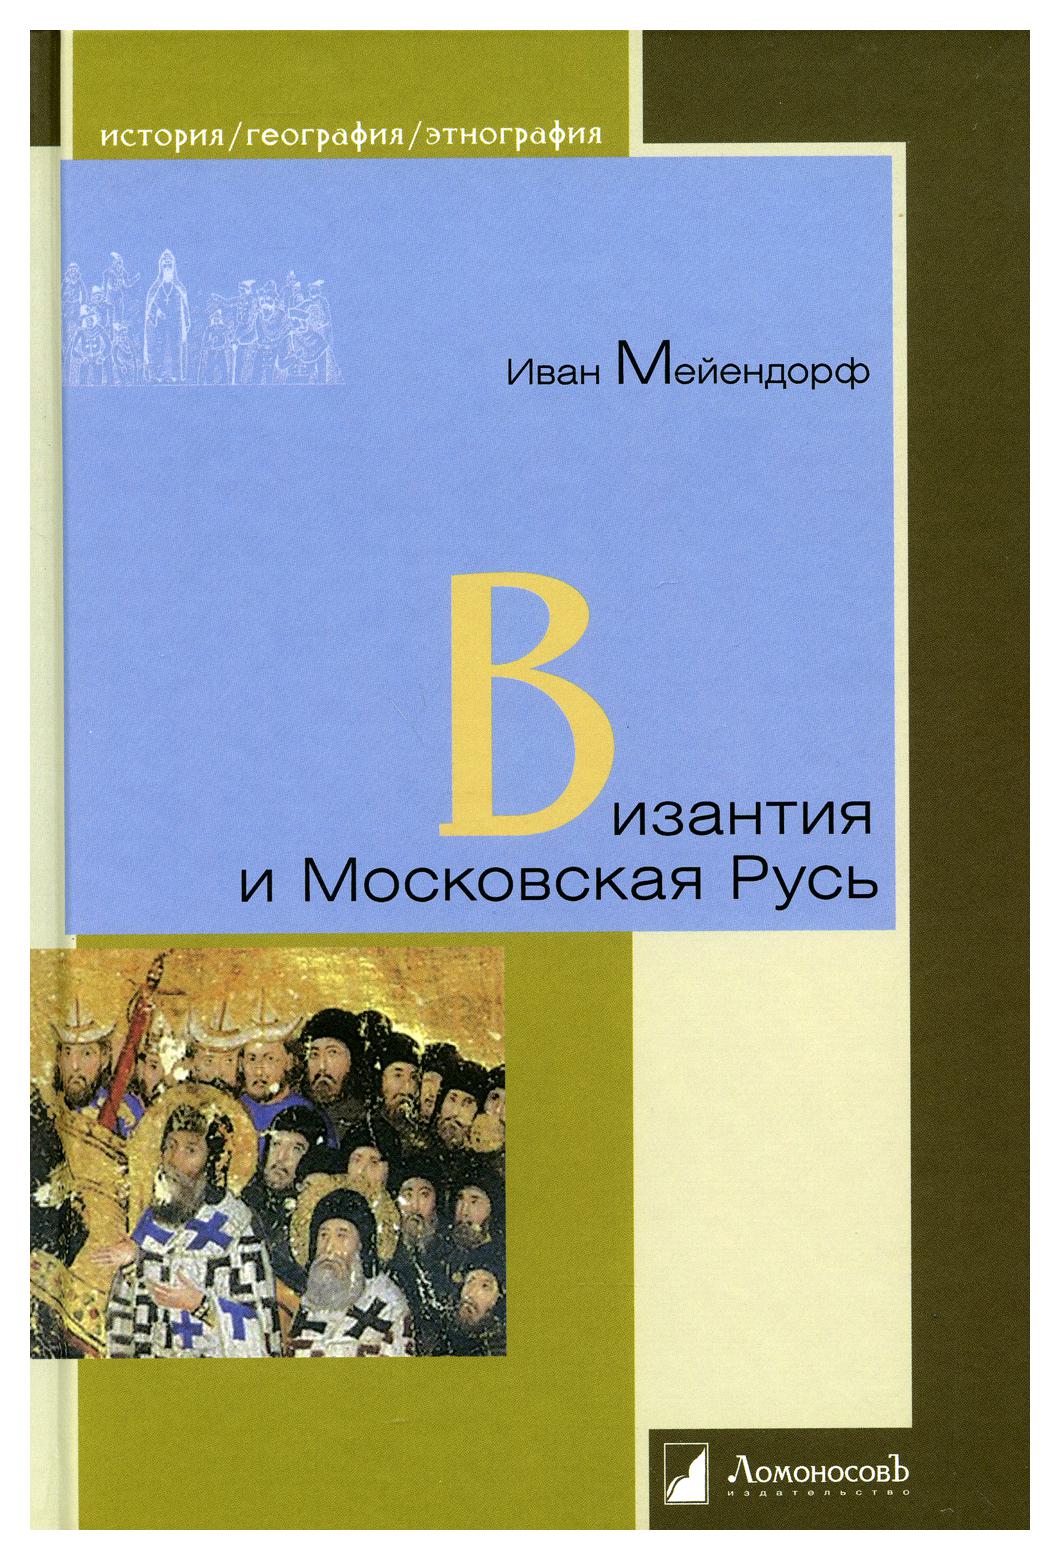 фото Книга византия и московская русь ломоносовъ